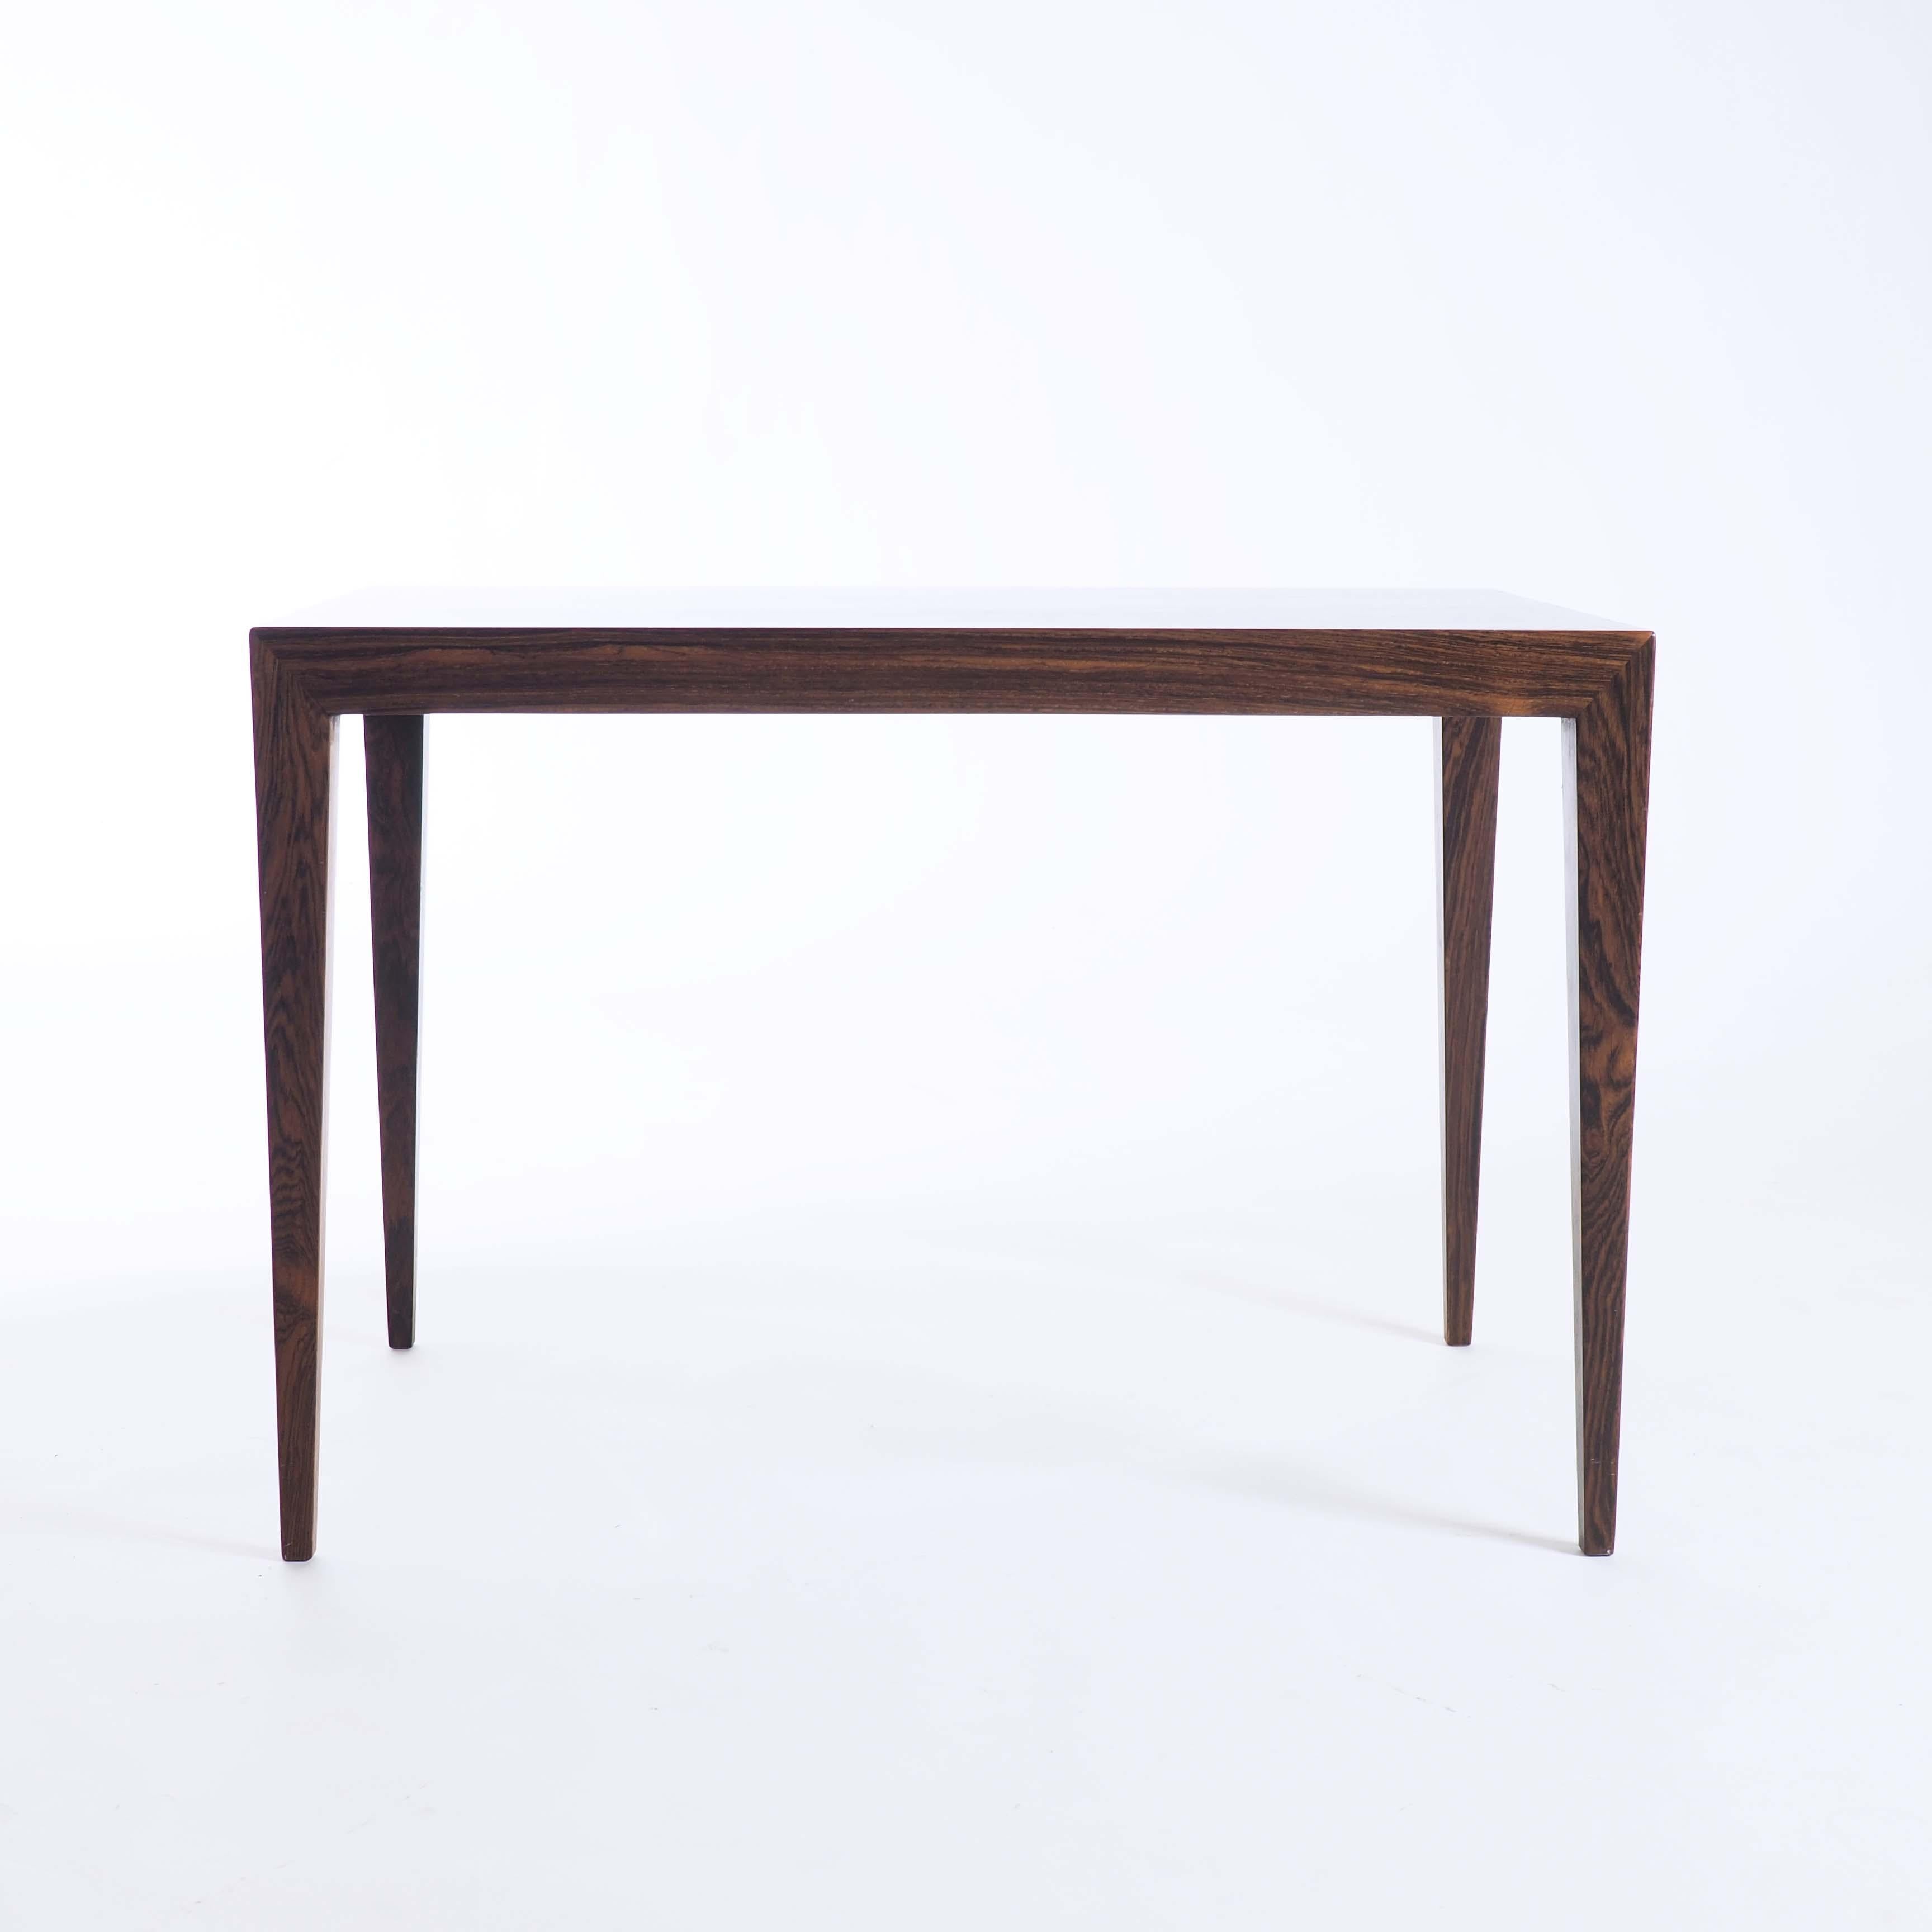 Das Design von Severin Hansen ist in der Regel sehr elegant. Und dieser Tisch ist da keine Ausnahme. Sehen Sie sich nur diese feinen Proportionen und präzisen Verbindungen an.